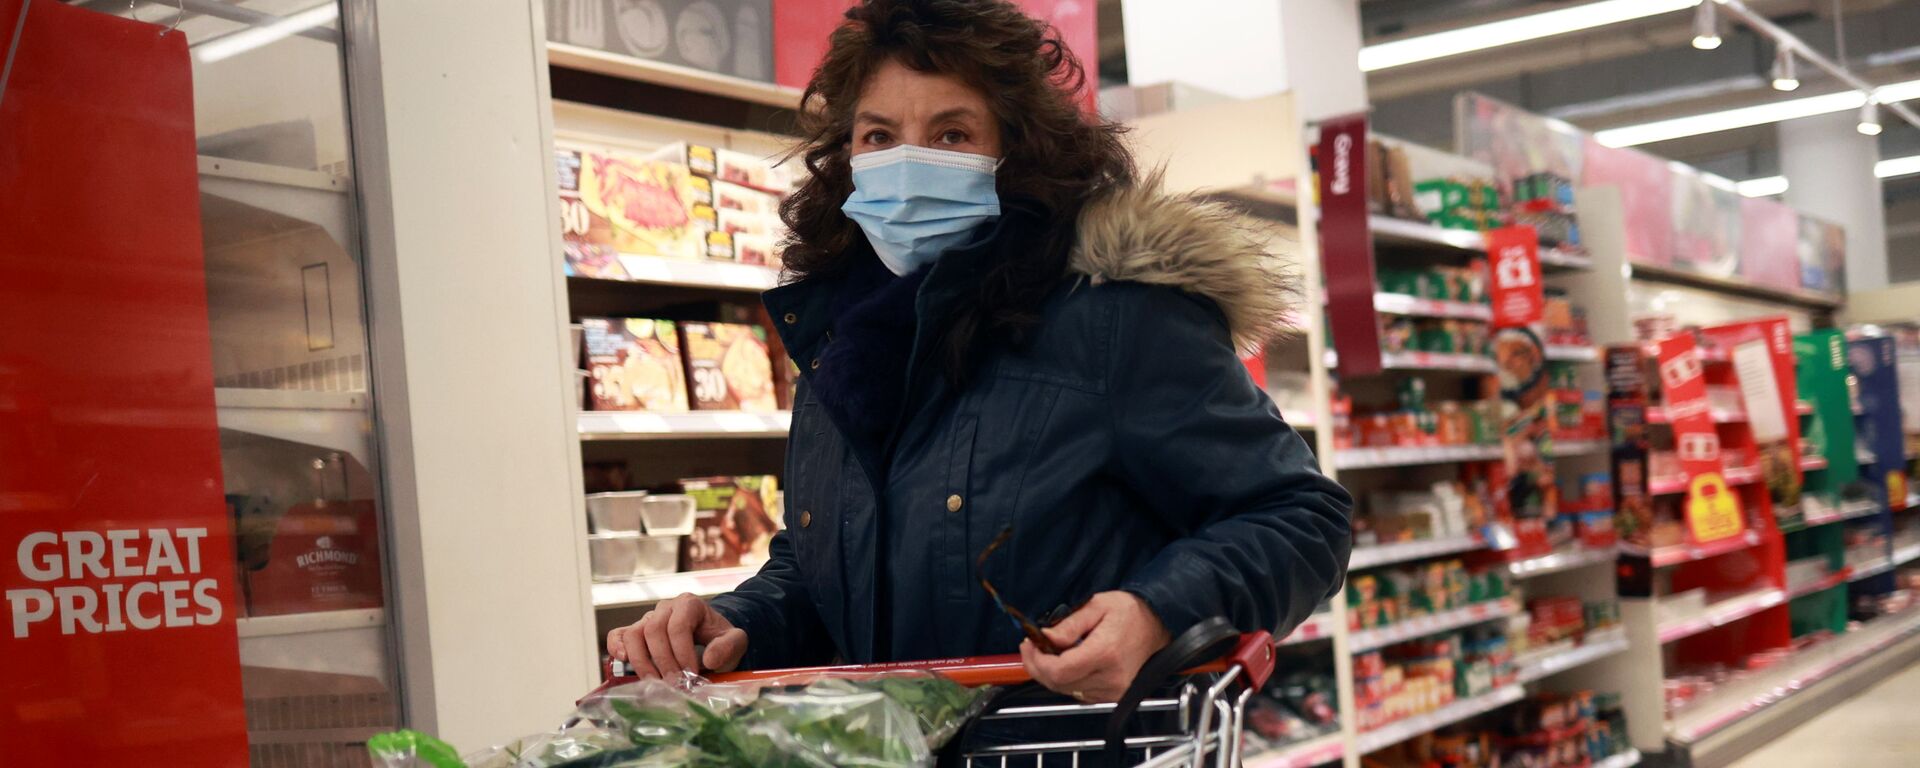 Женщина в защитной маске в супермаркете - Sputnik Латвия, 1920, 05.02.2021